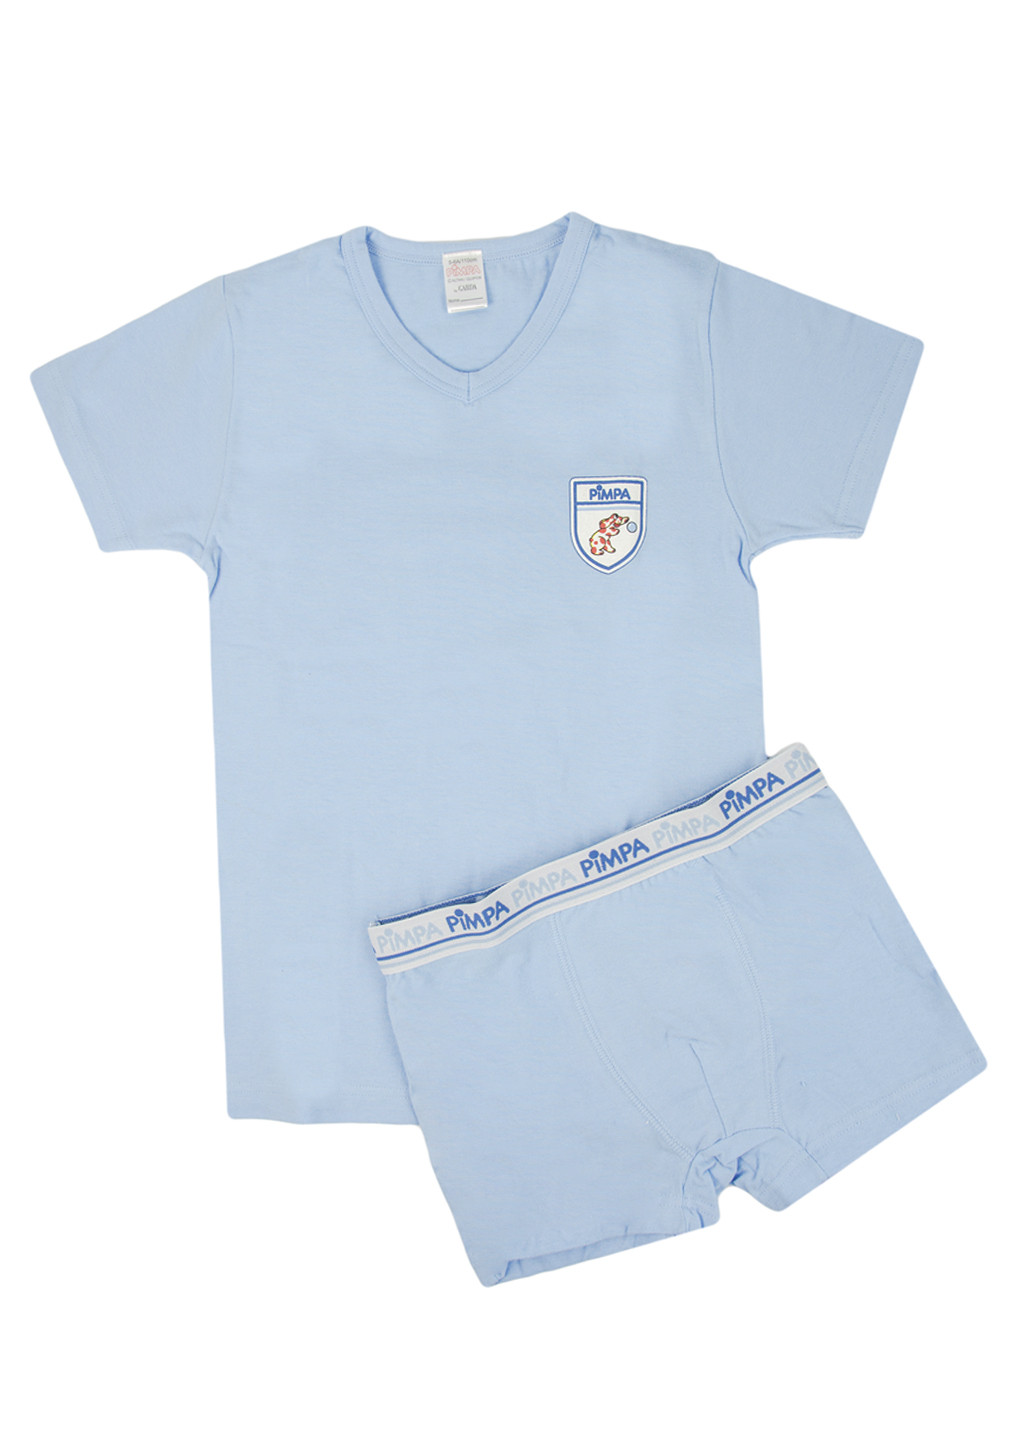 Голубой демисезонный комплект (футболка, трусы) Pimpa